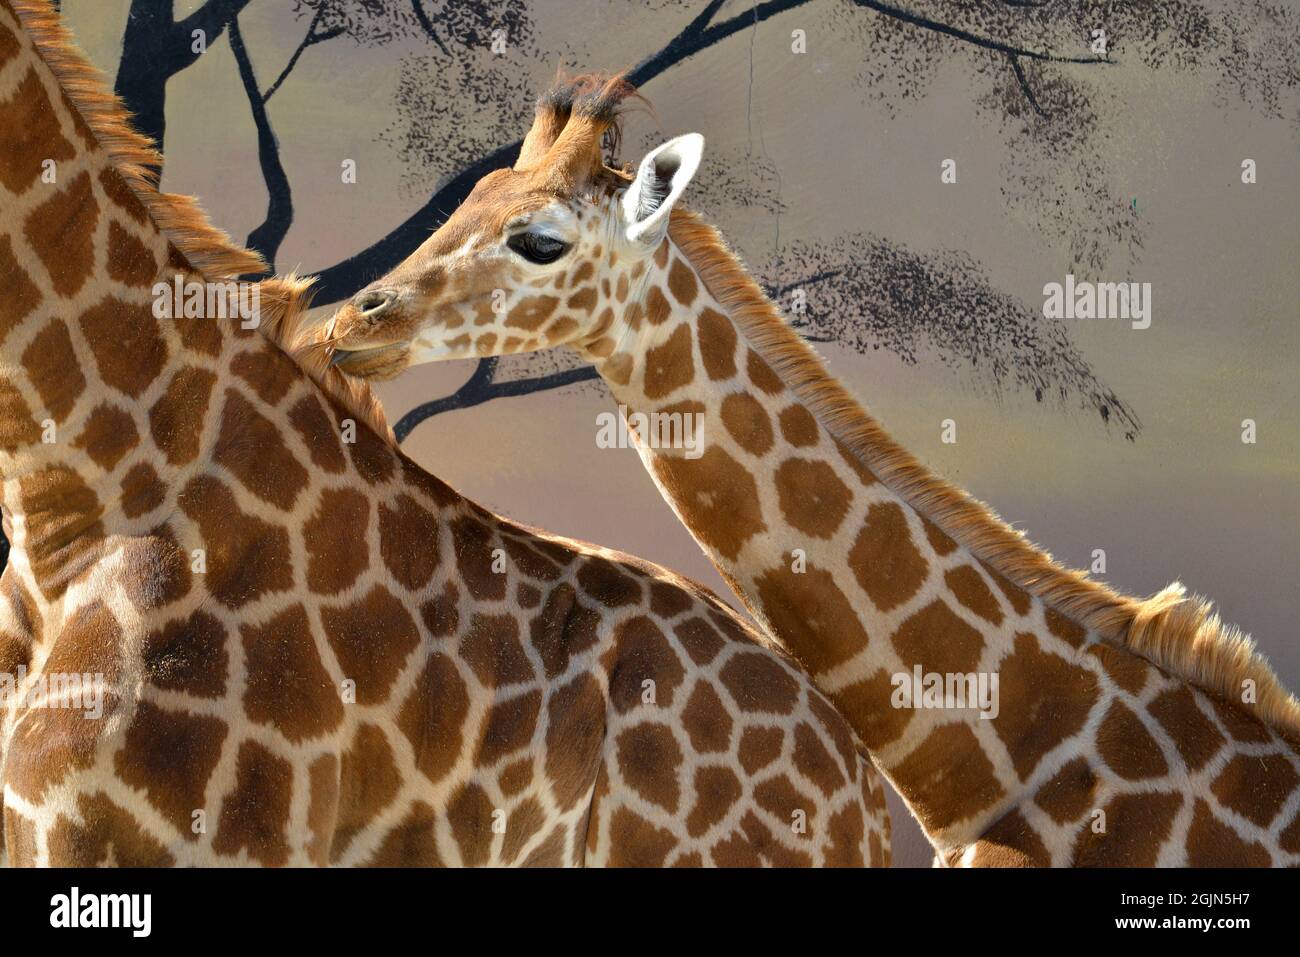 Primo piano di giraffa giovanile (Giraffa camelopardalis) vicino ad un adulto Foto Stock